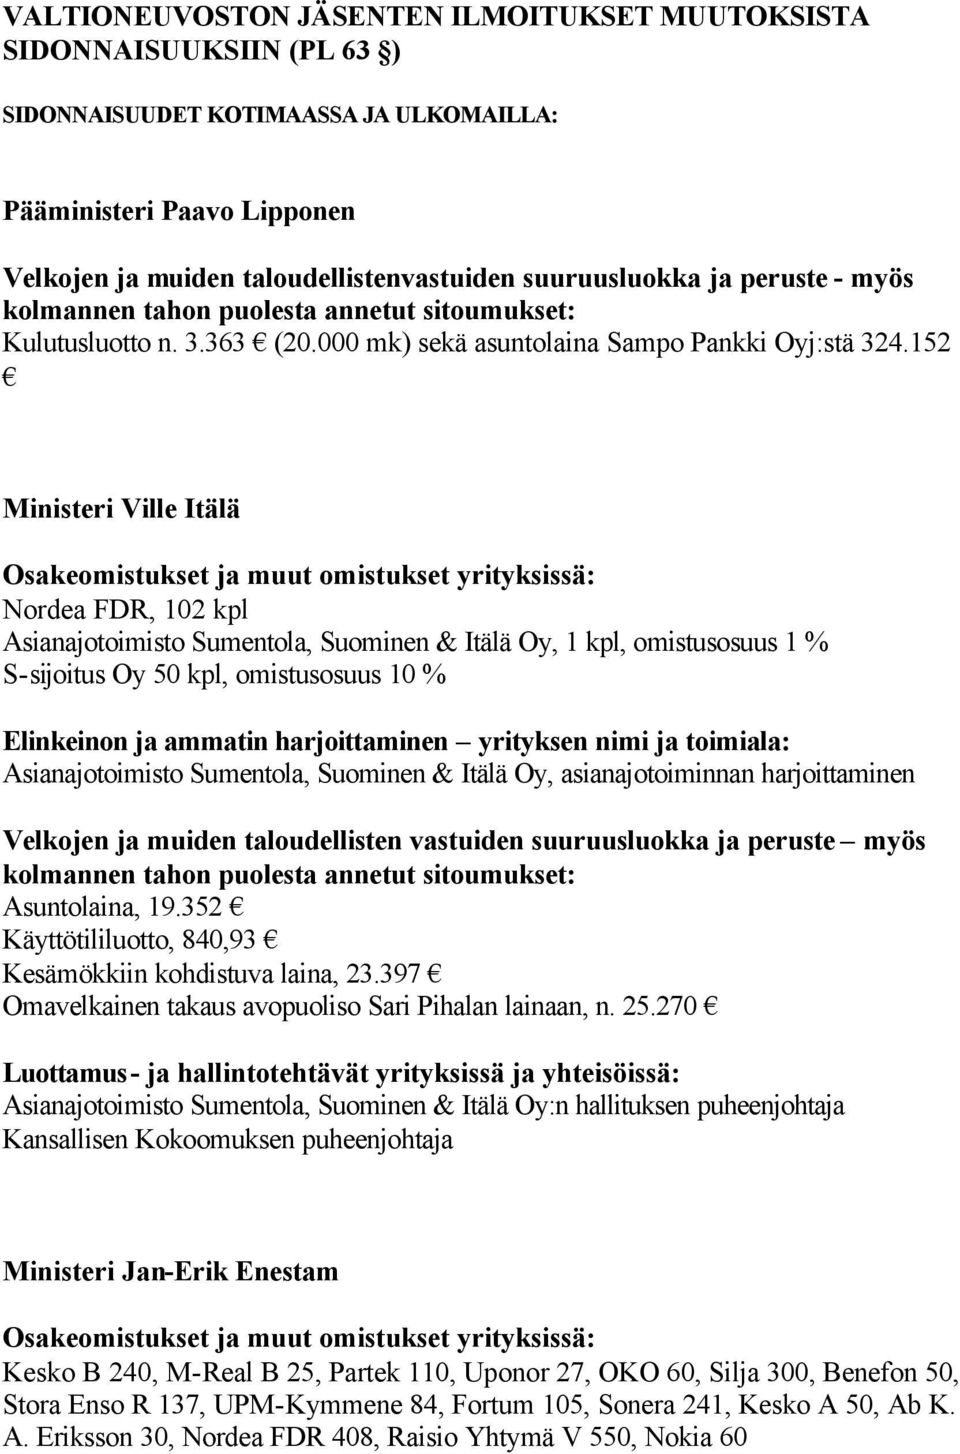 152 Ministeri Ville Itälä Nordea FDR, 102 kpl Asianajotoimisto Sumentola, Suominen & Itälä Oy, 1 kpl, omistusosuus 1 % S-sijoitus Oy 50 kpl, omistusosuus 10 % Elinkeinon ja ammatin harjoittaminen